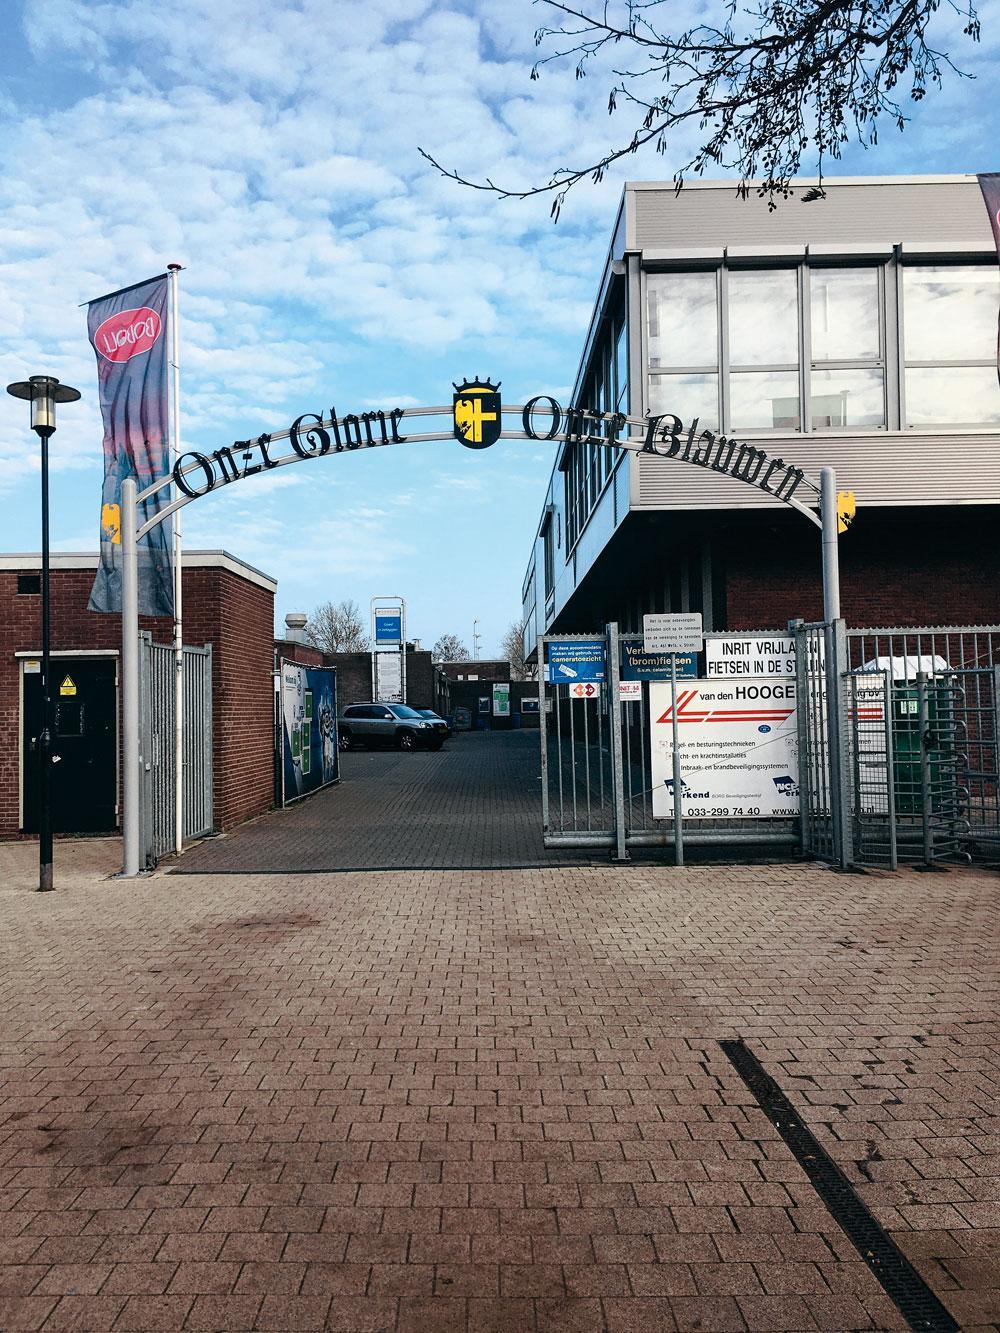 De toegangspoort van SV Spakenburg: 'Onze Glorie, Onze Blauwen'.